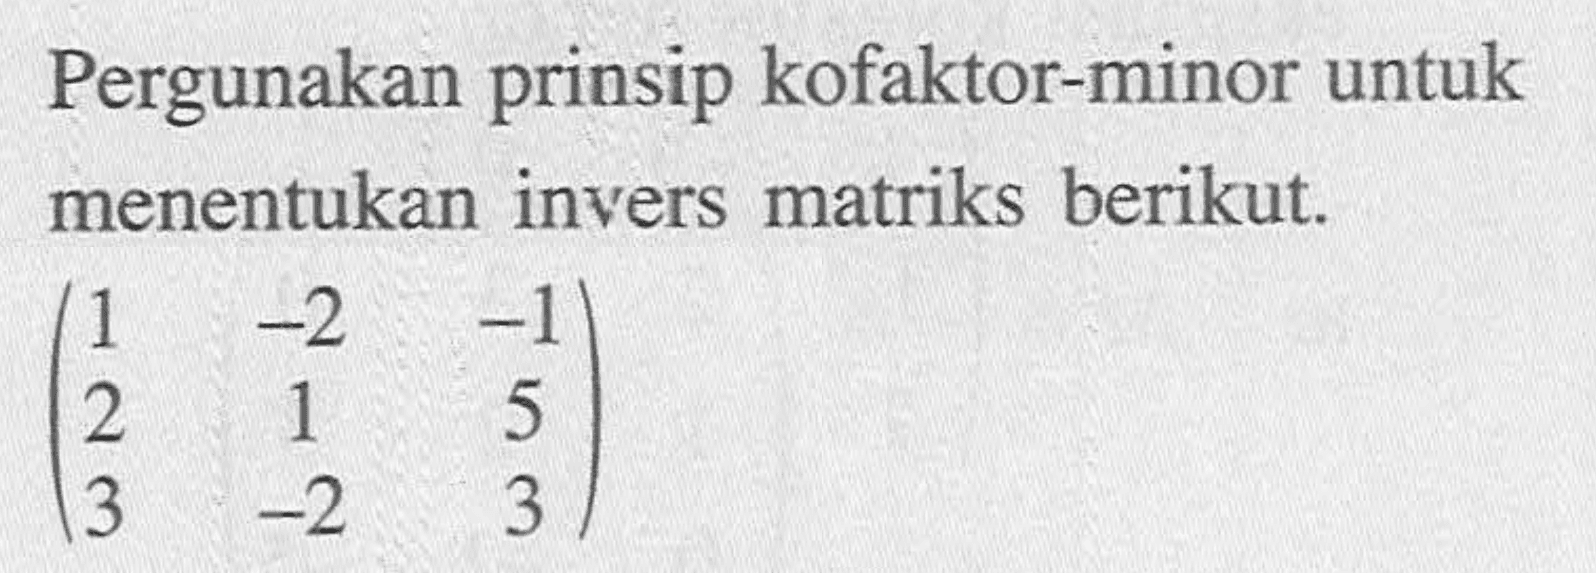 Pergunakan prinsip kofaktor-minor untuk menentukan invers matriks berikut. (1 -2 -1 2 1 5 3 -2 3)